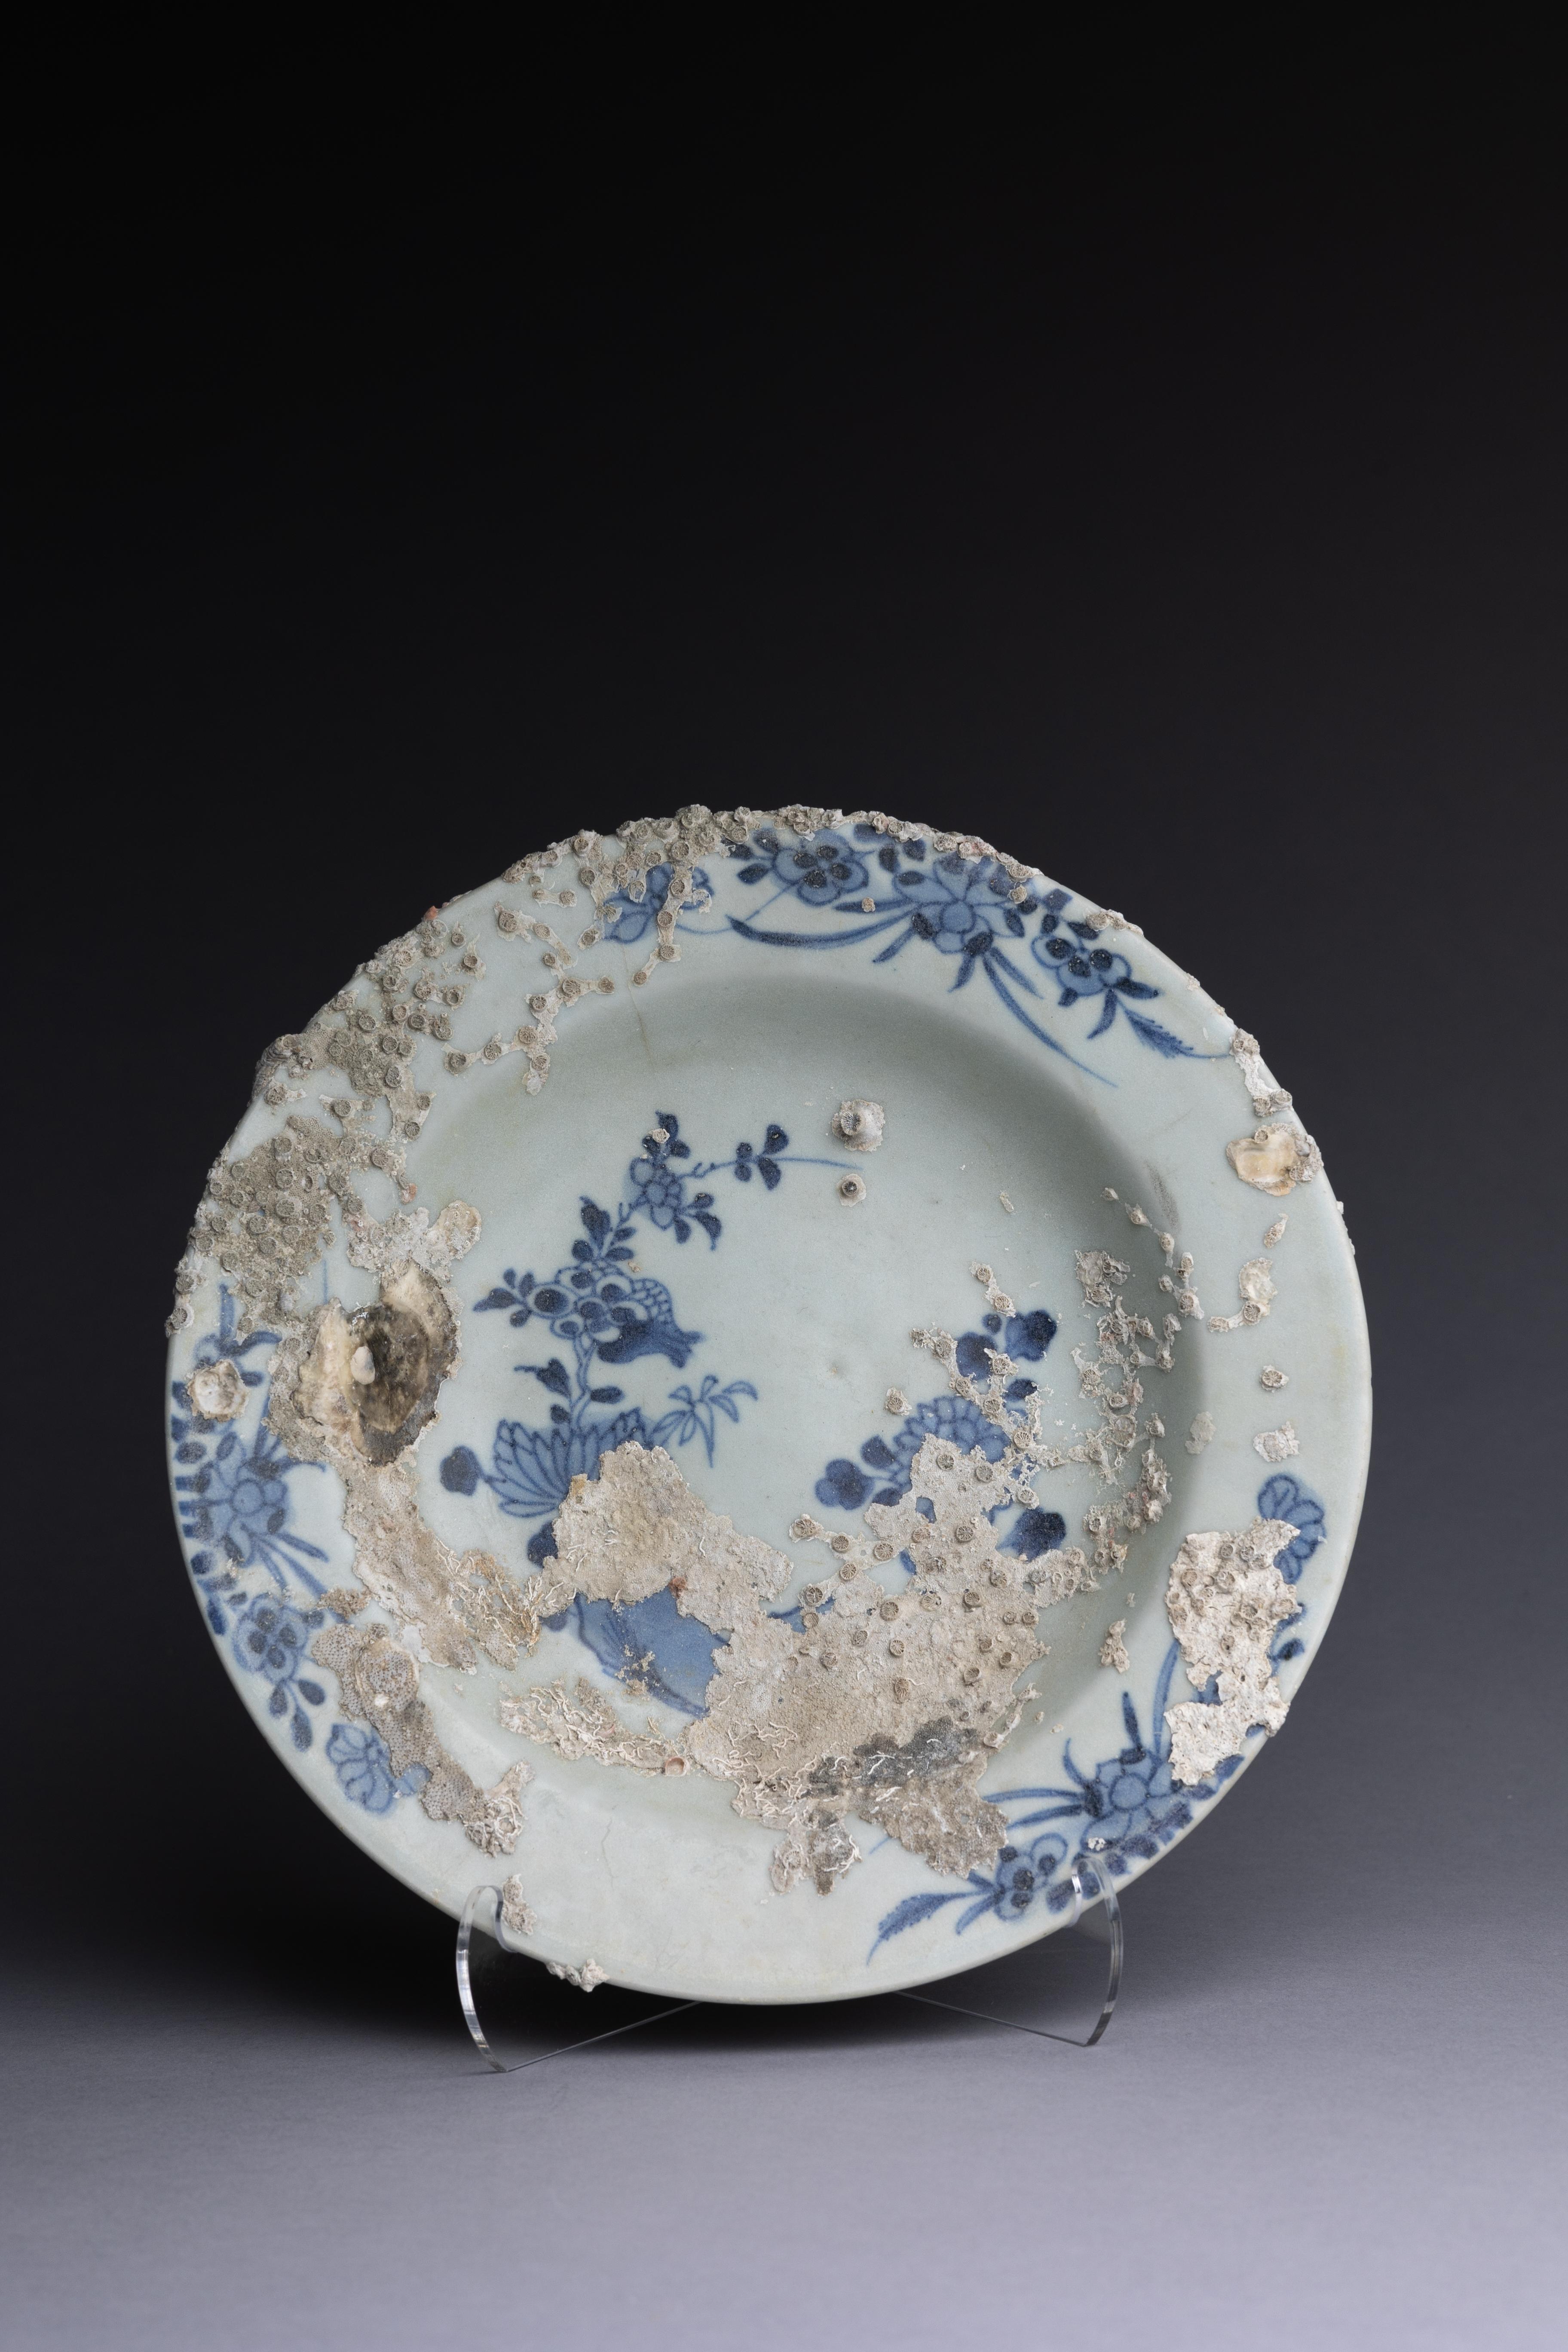 Assiette creuse en porcelaine d'exportation chinoise provenant des cargaisons de porcelaine Hatcher, fabriquée entre le début et le milieu du XVIIIe siècle.

Cette assiette creuse en porcelaine chinoise a été créée spécifiquement pour